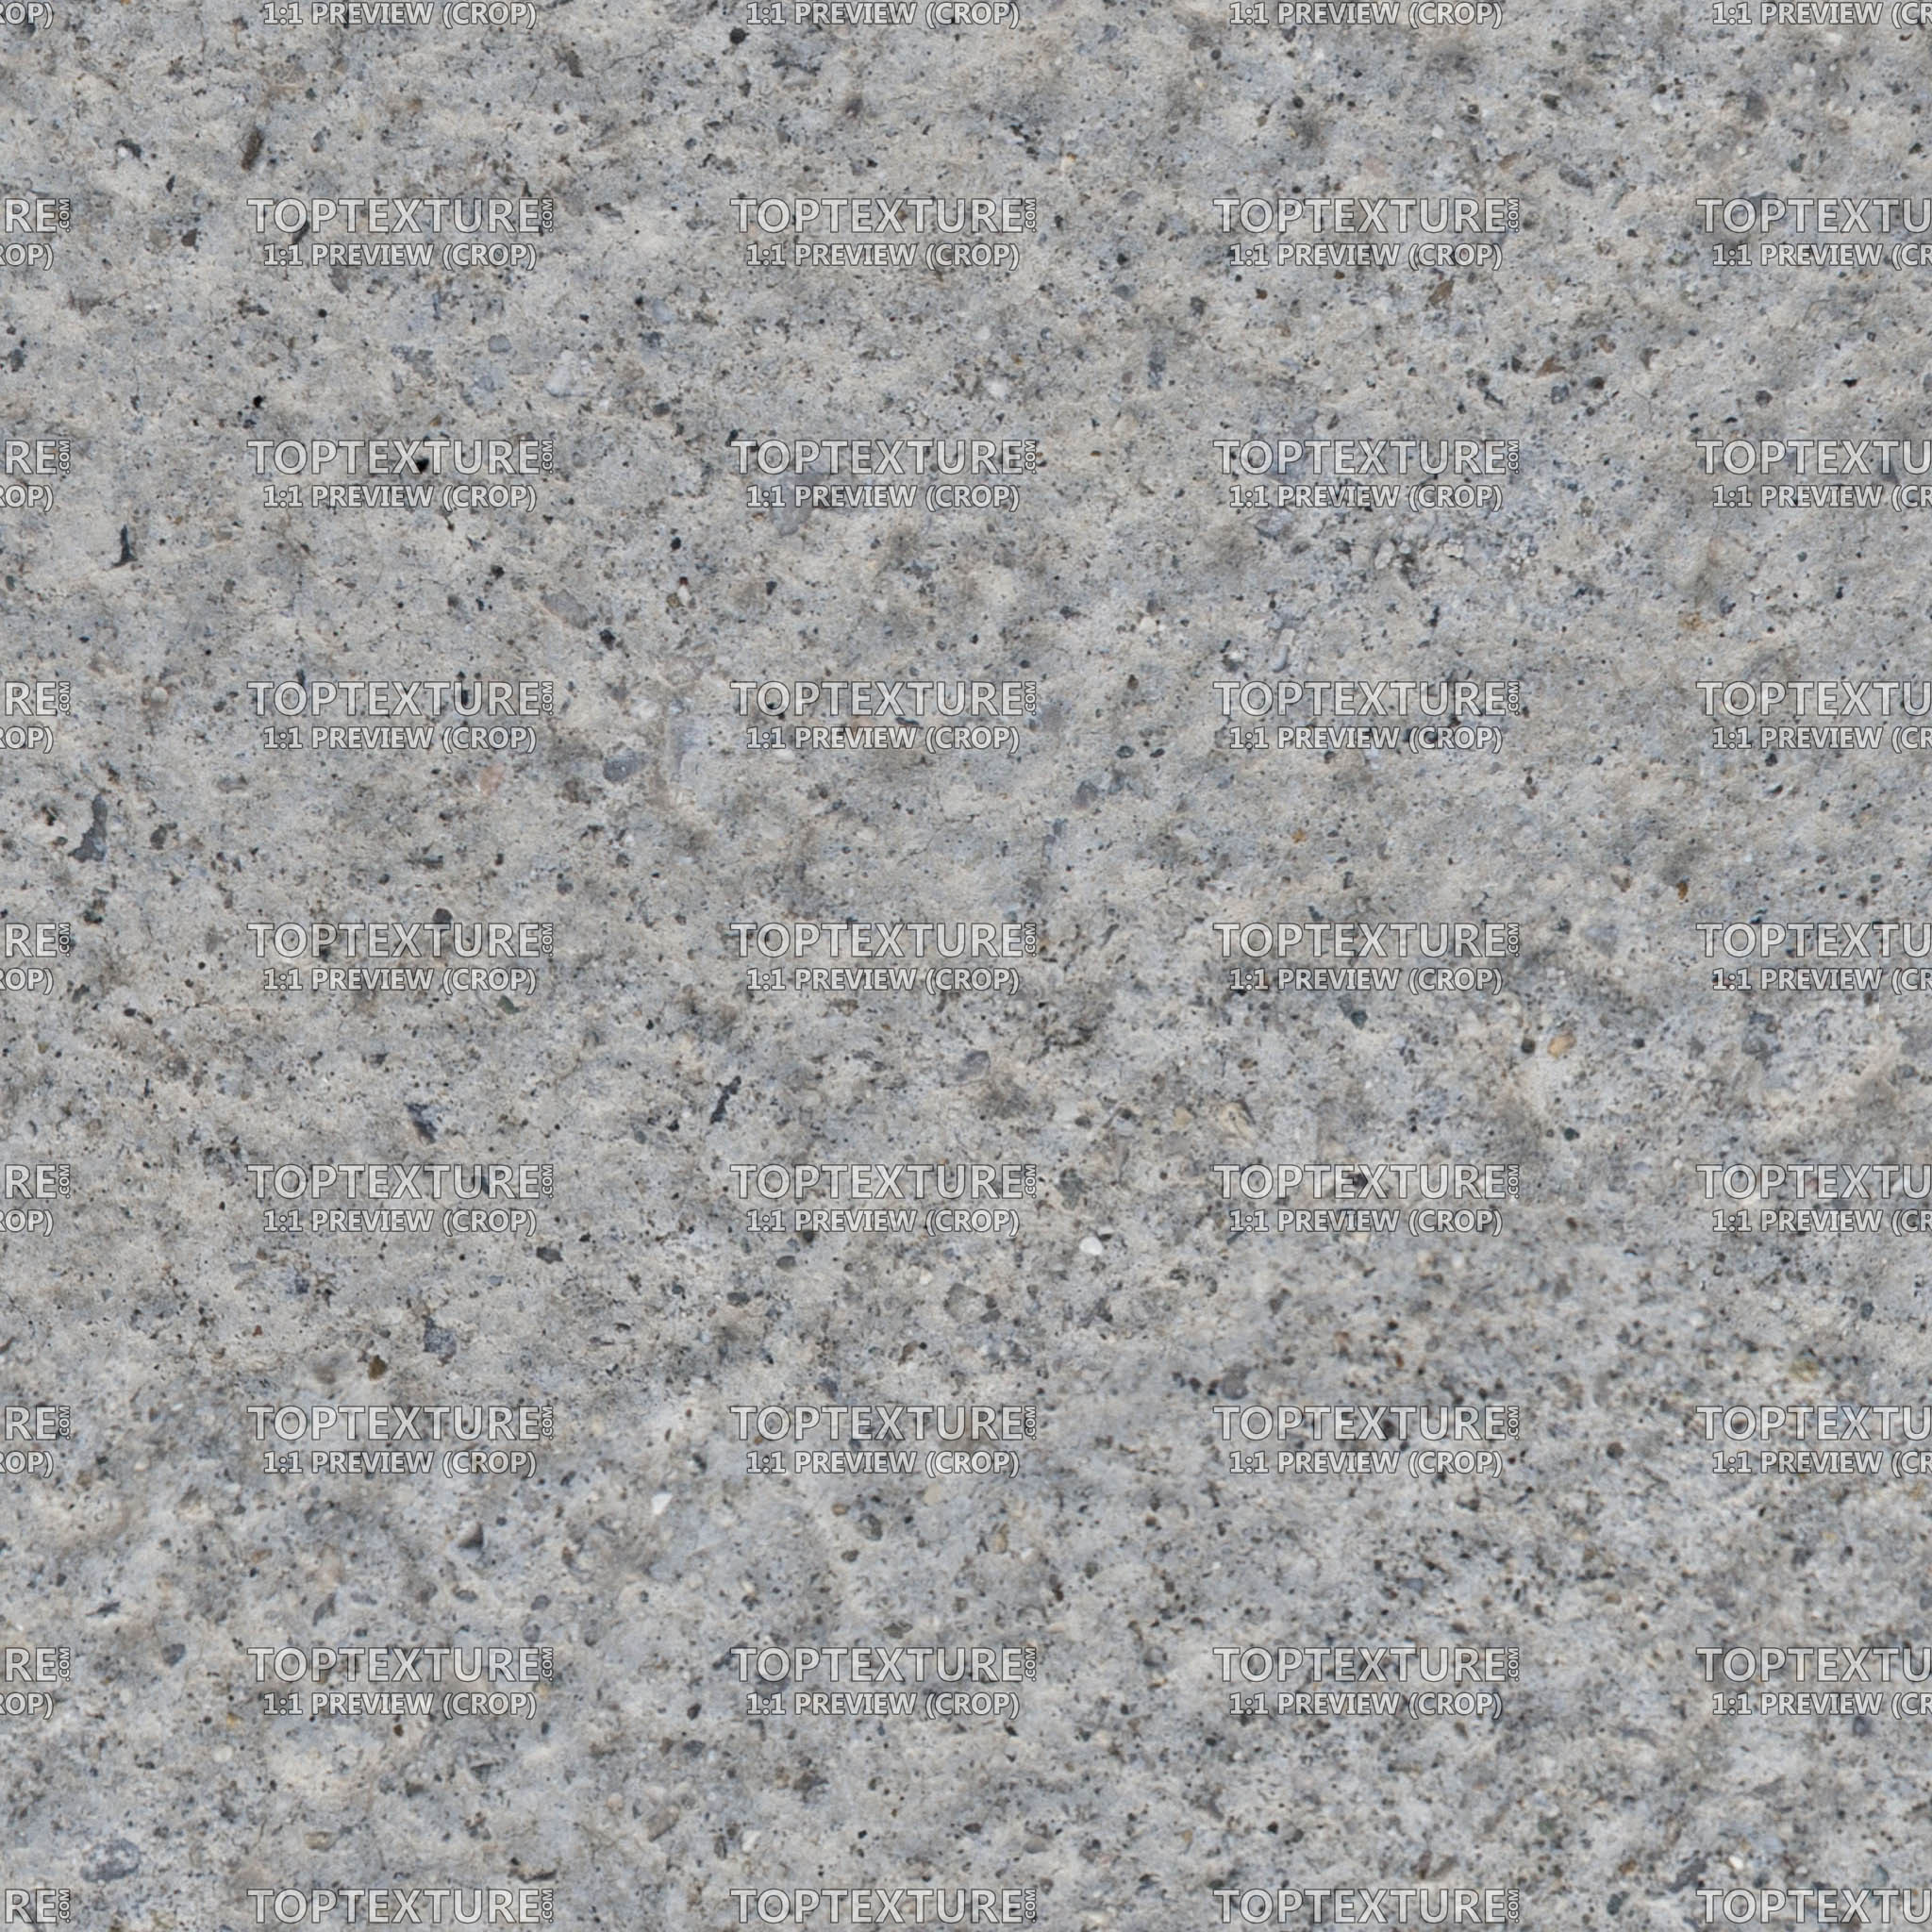 Rough Concrete Ground Closeup - 100% zoom